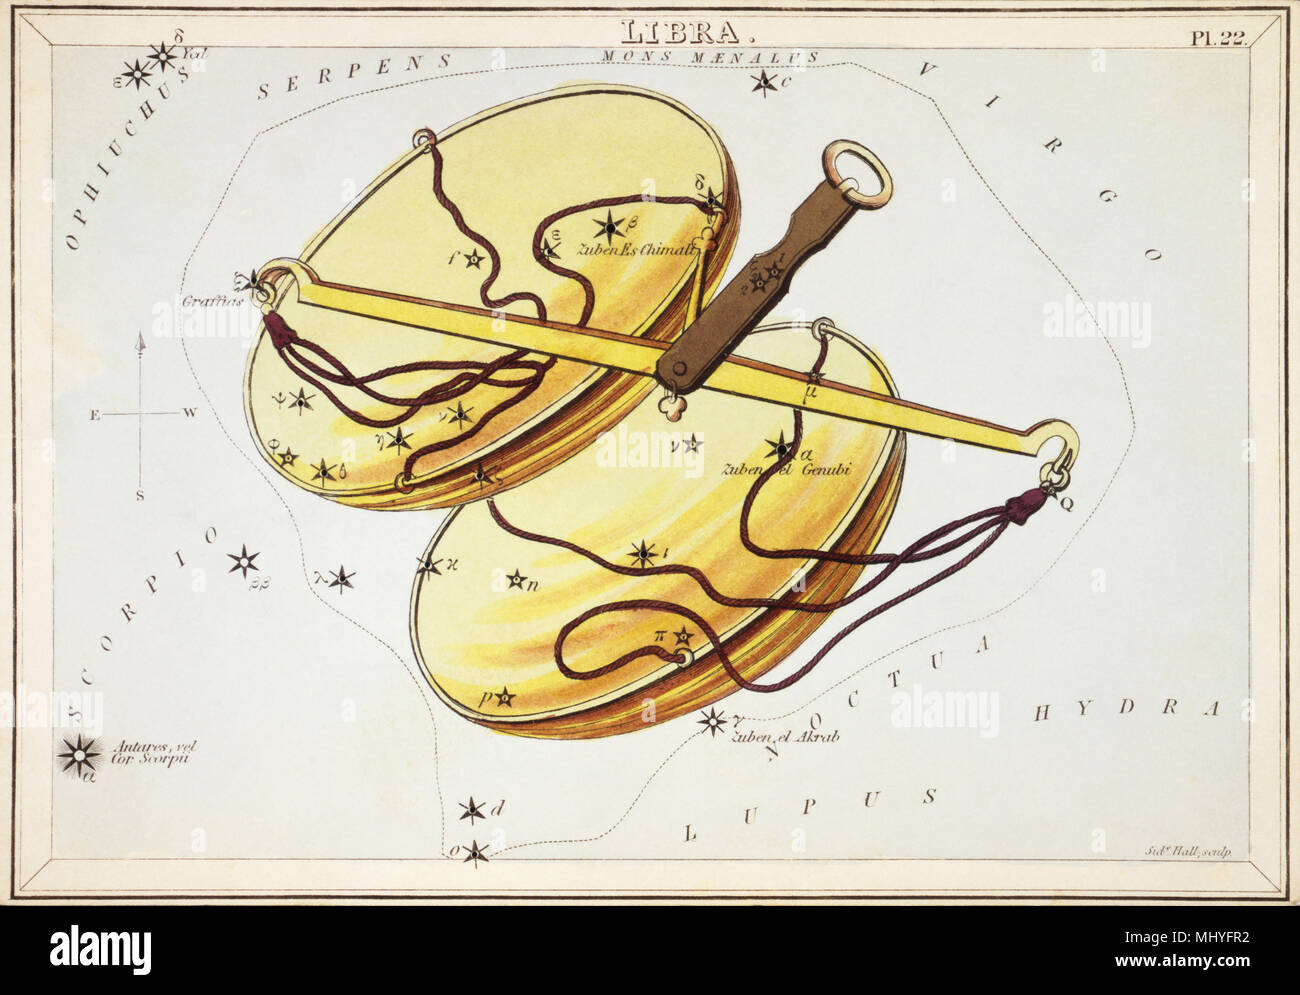 Waage. Karte Nummer 22 von Urania's Mirror, oder einen Blick auf den Himmel, eines der 32 astronomischen Star Chart Karten von Sidney Hall graviert und publshed 1824. Stockfoto